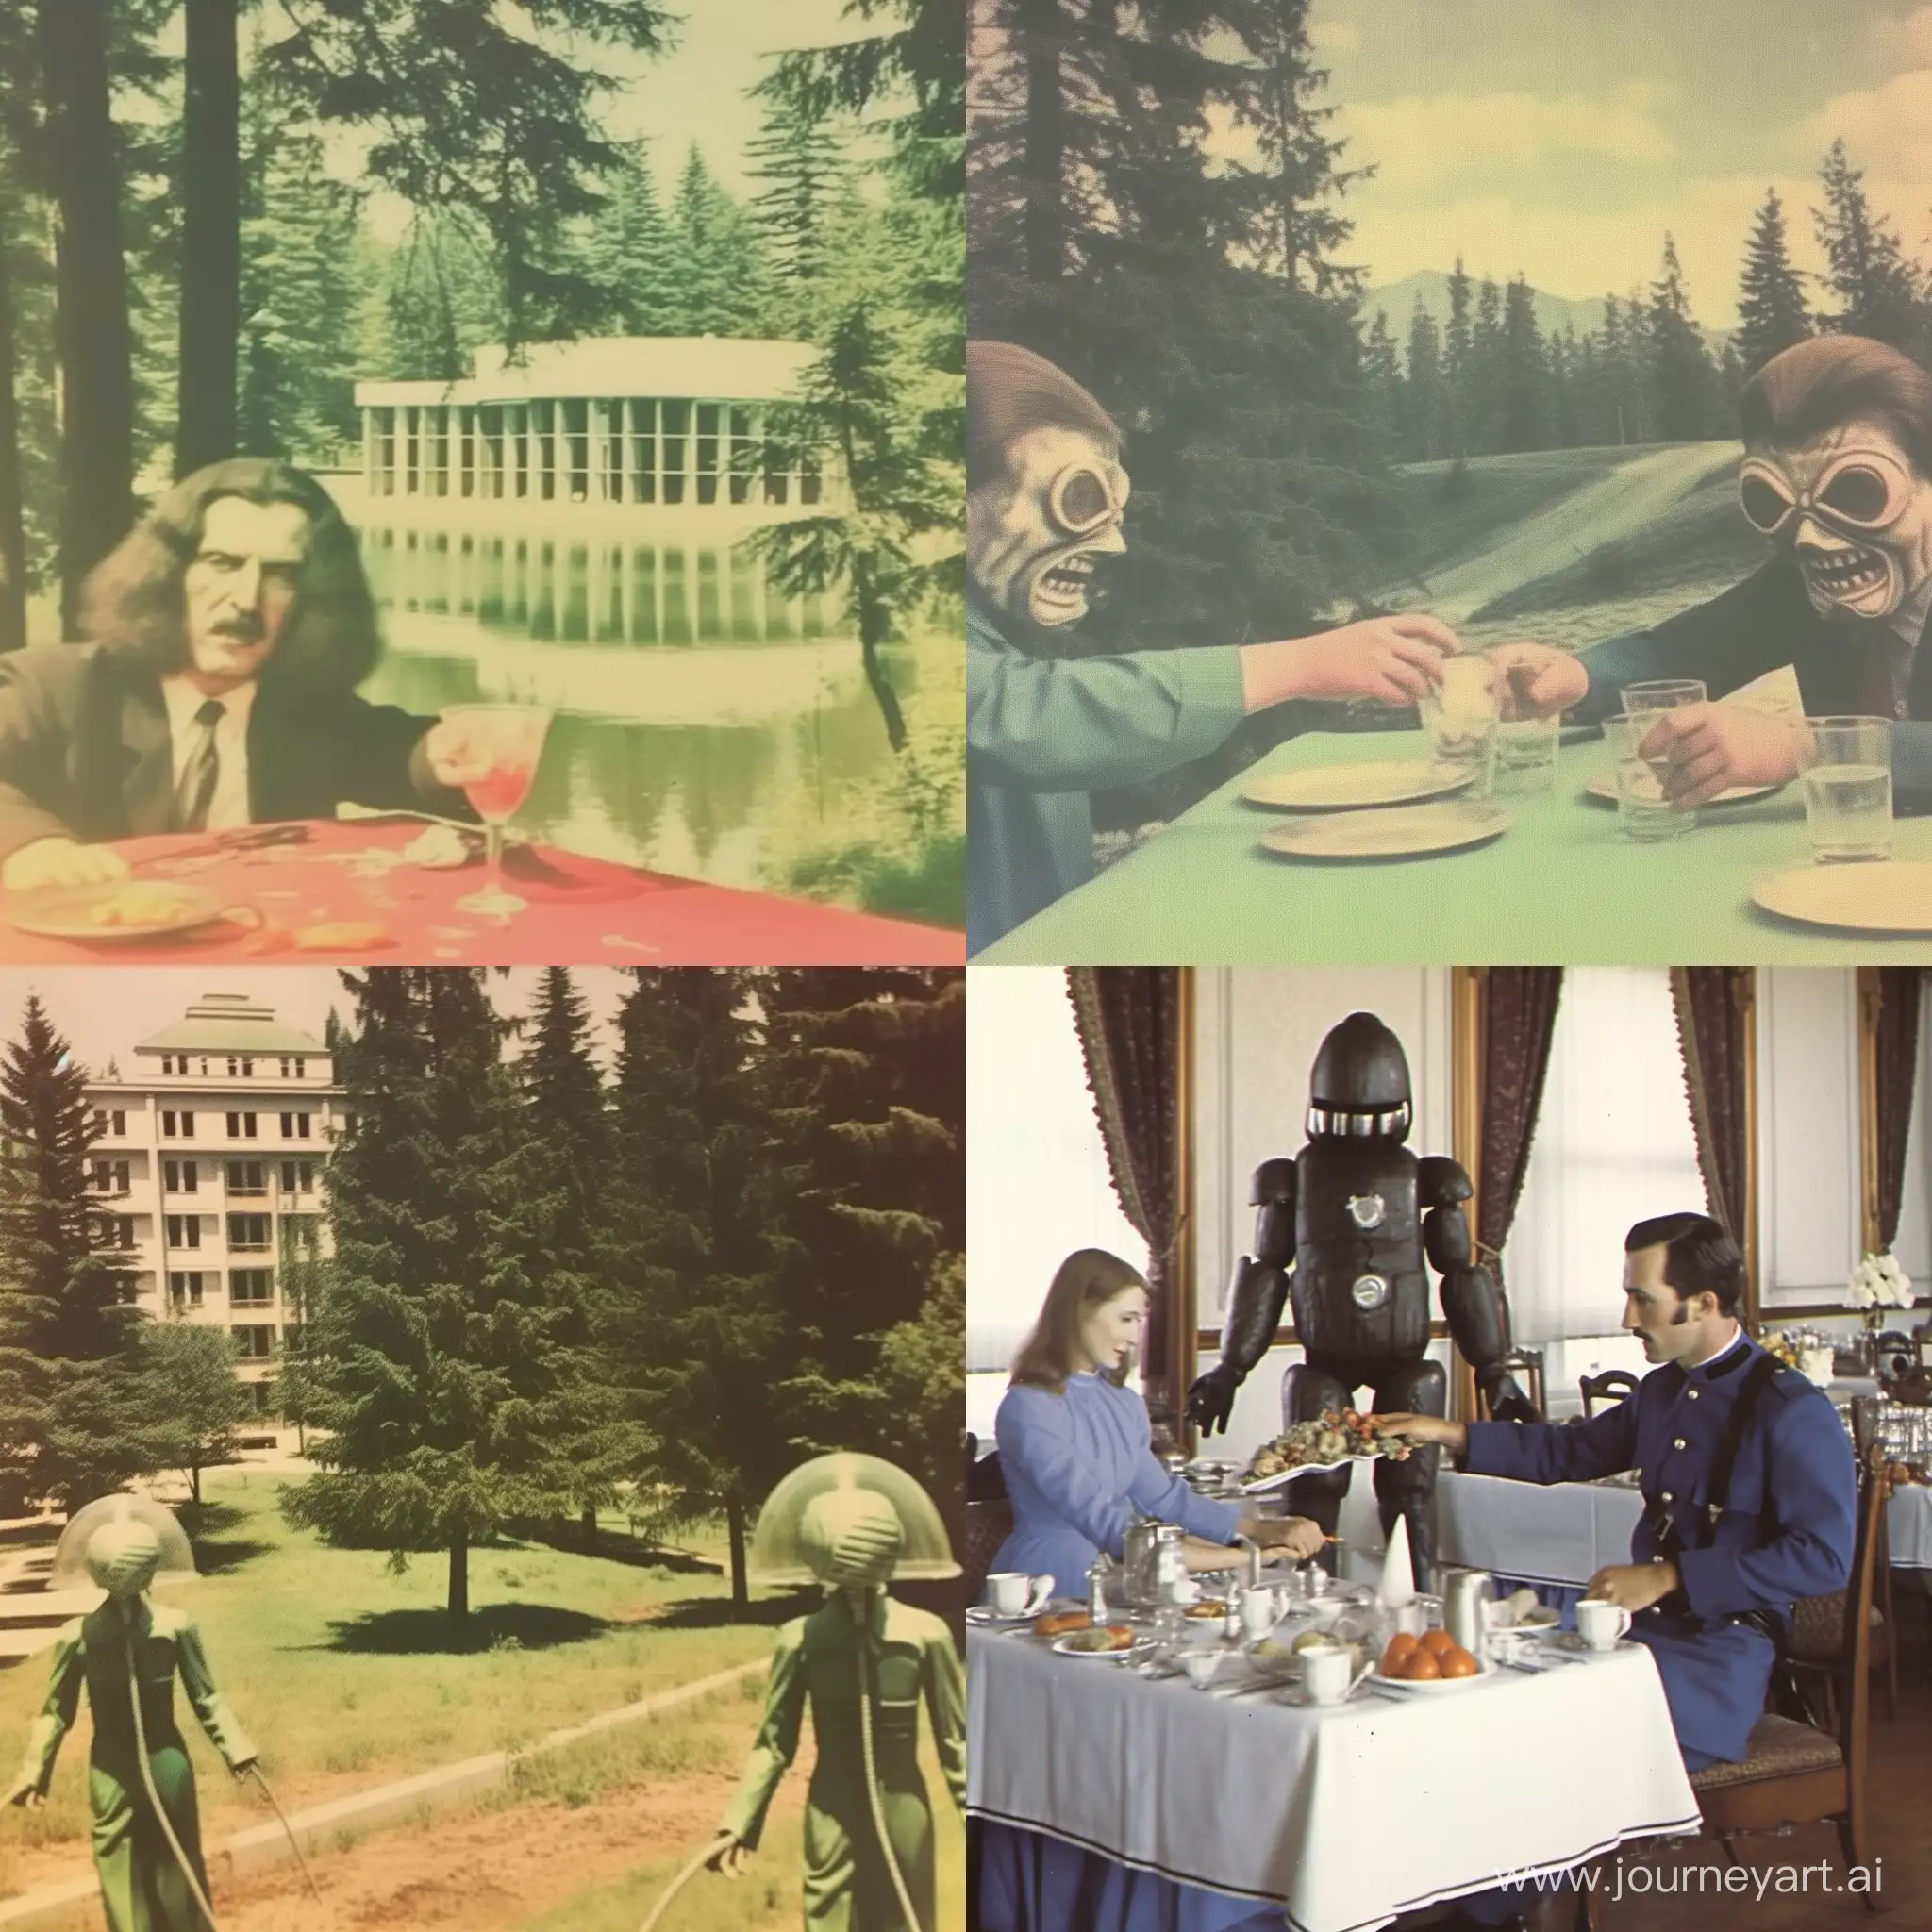 Uncanny-SovietEra-Encounters-Vintage-Photorealistic-WeirdCore-Imagery